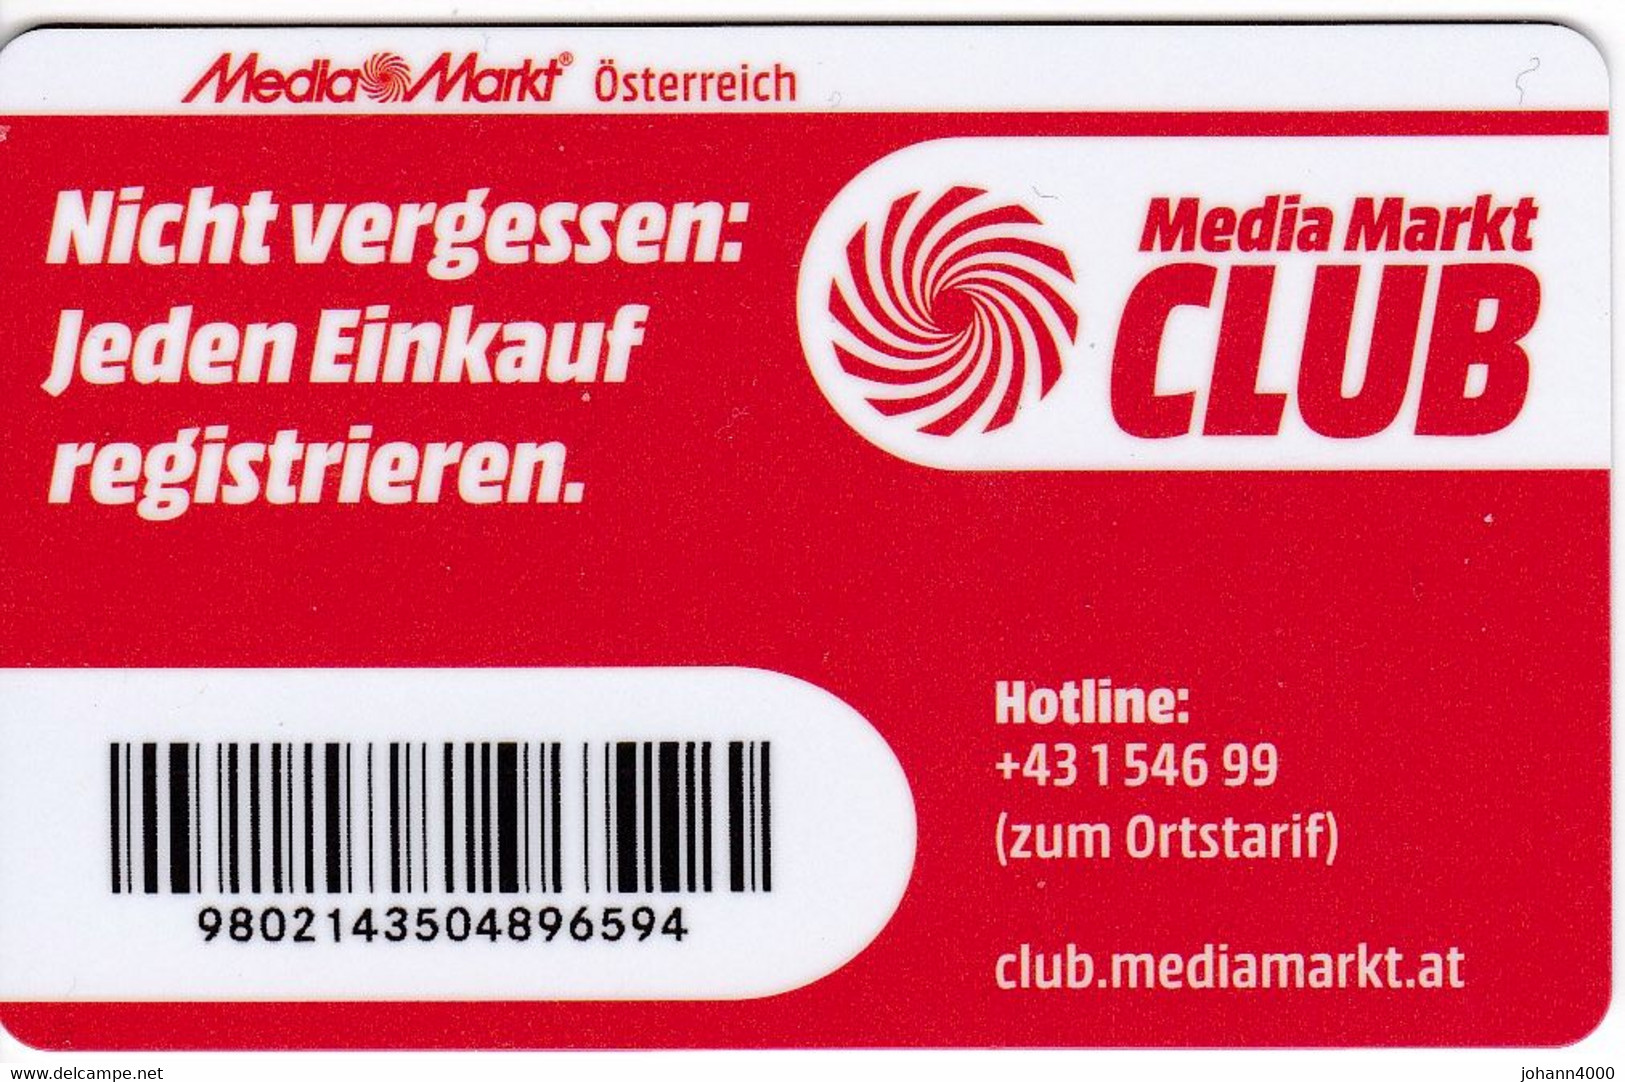 Media Markt Login: Anmelden für Club Karte und Online-Shop